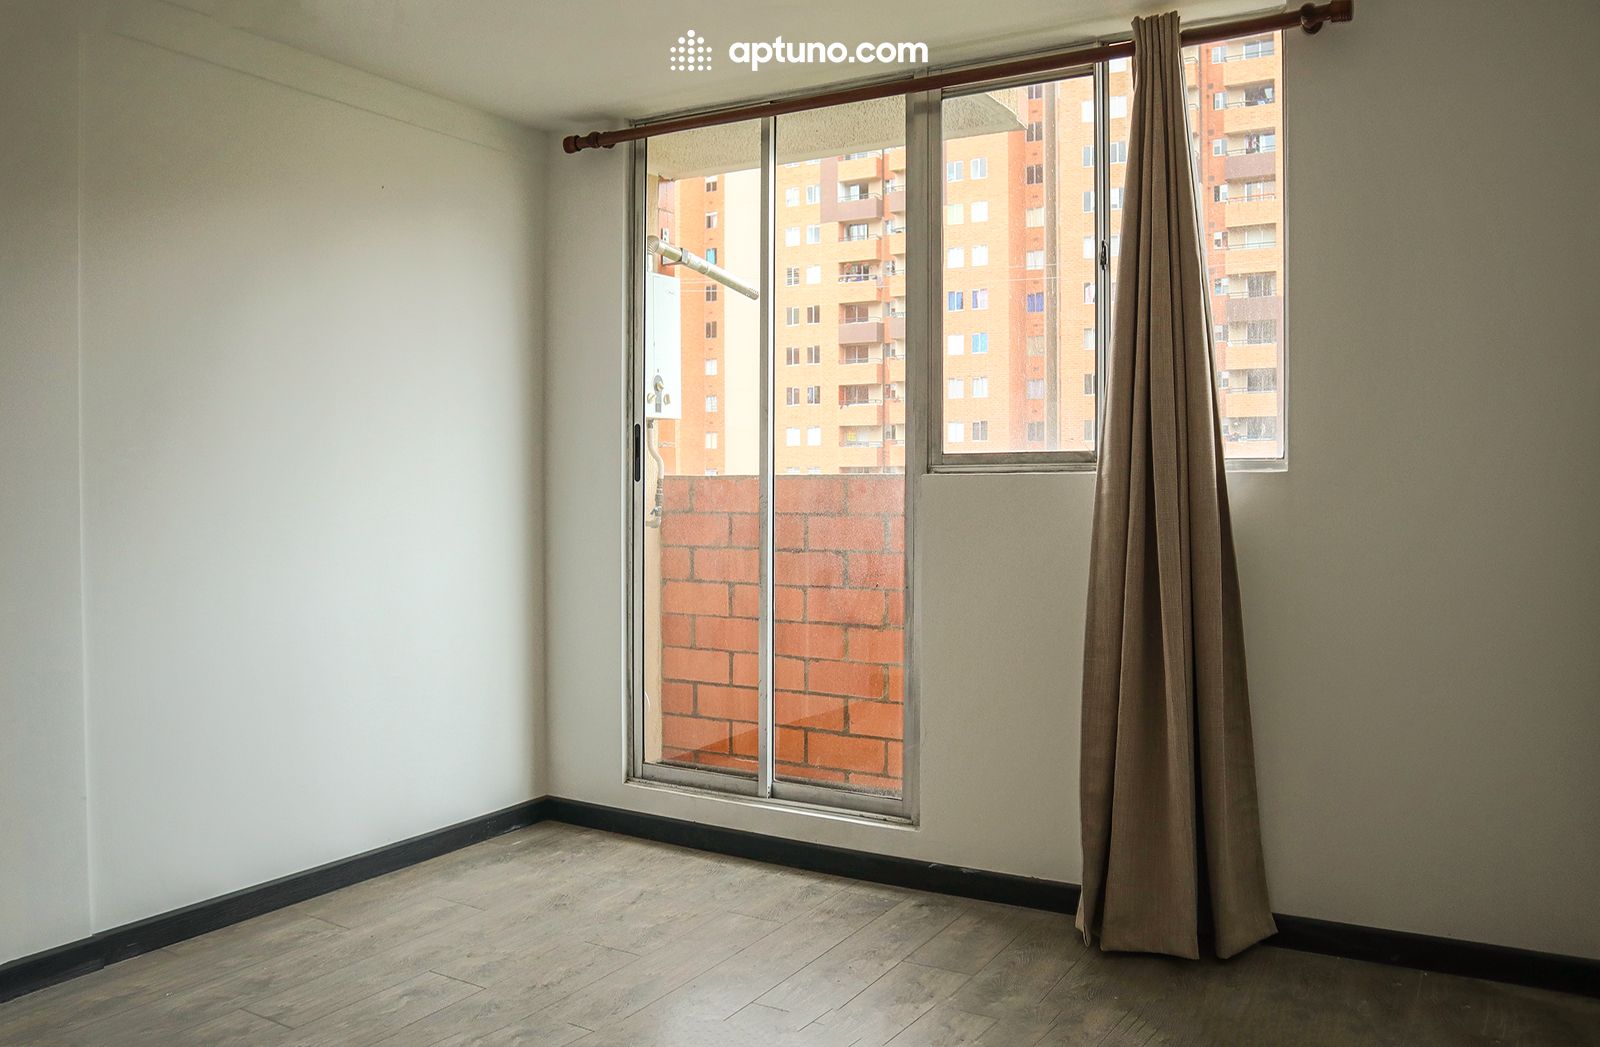 Apartamento en arriendo Madrid 64 m² - $ 770.000,00